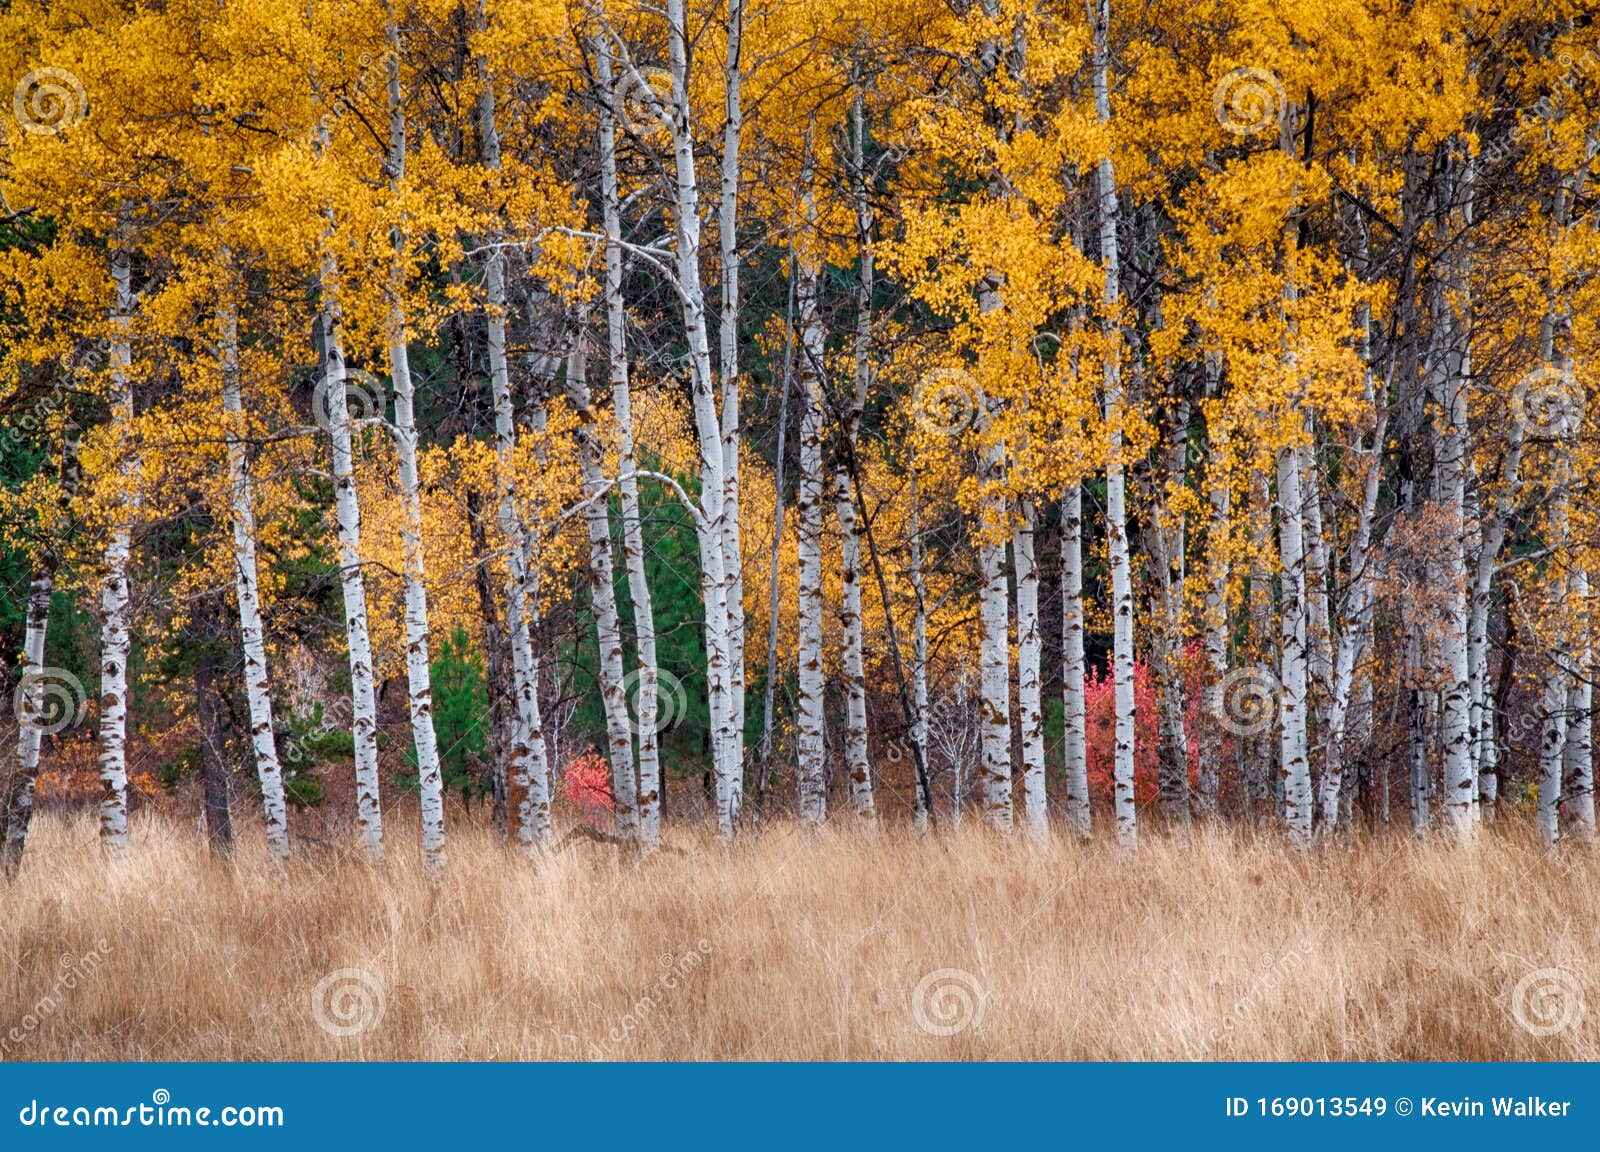 White Barked Quaking Aspen Trees Under Autumn Golden Leaves Stock Image